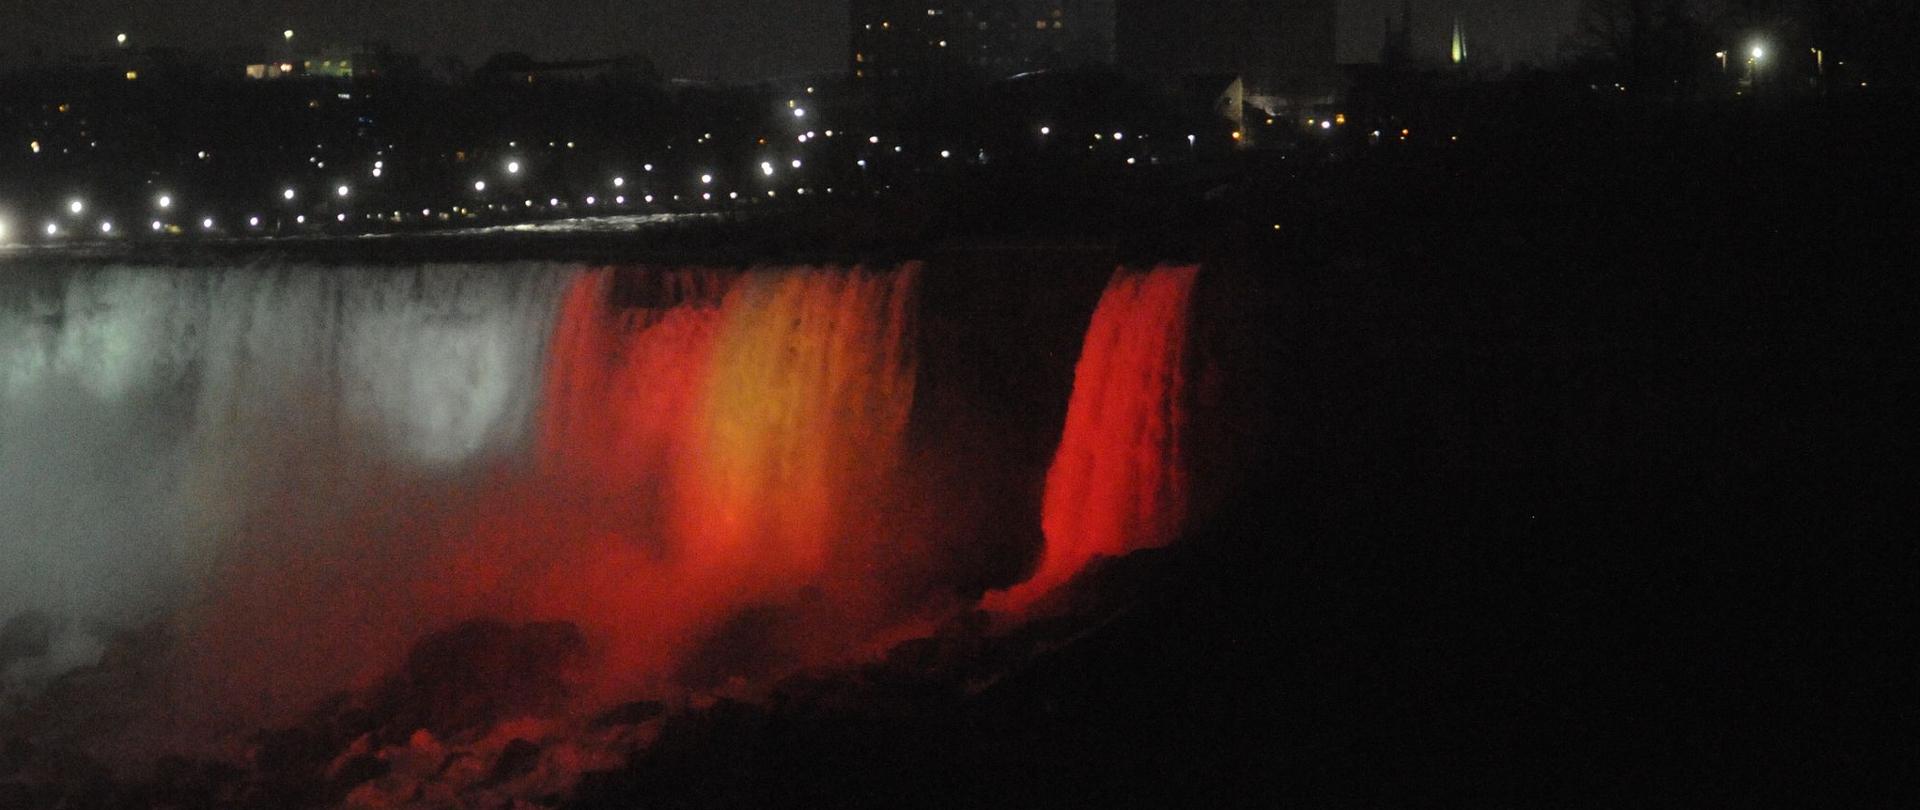 Wodospad Niagara w polskich barwach narodowych